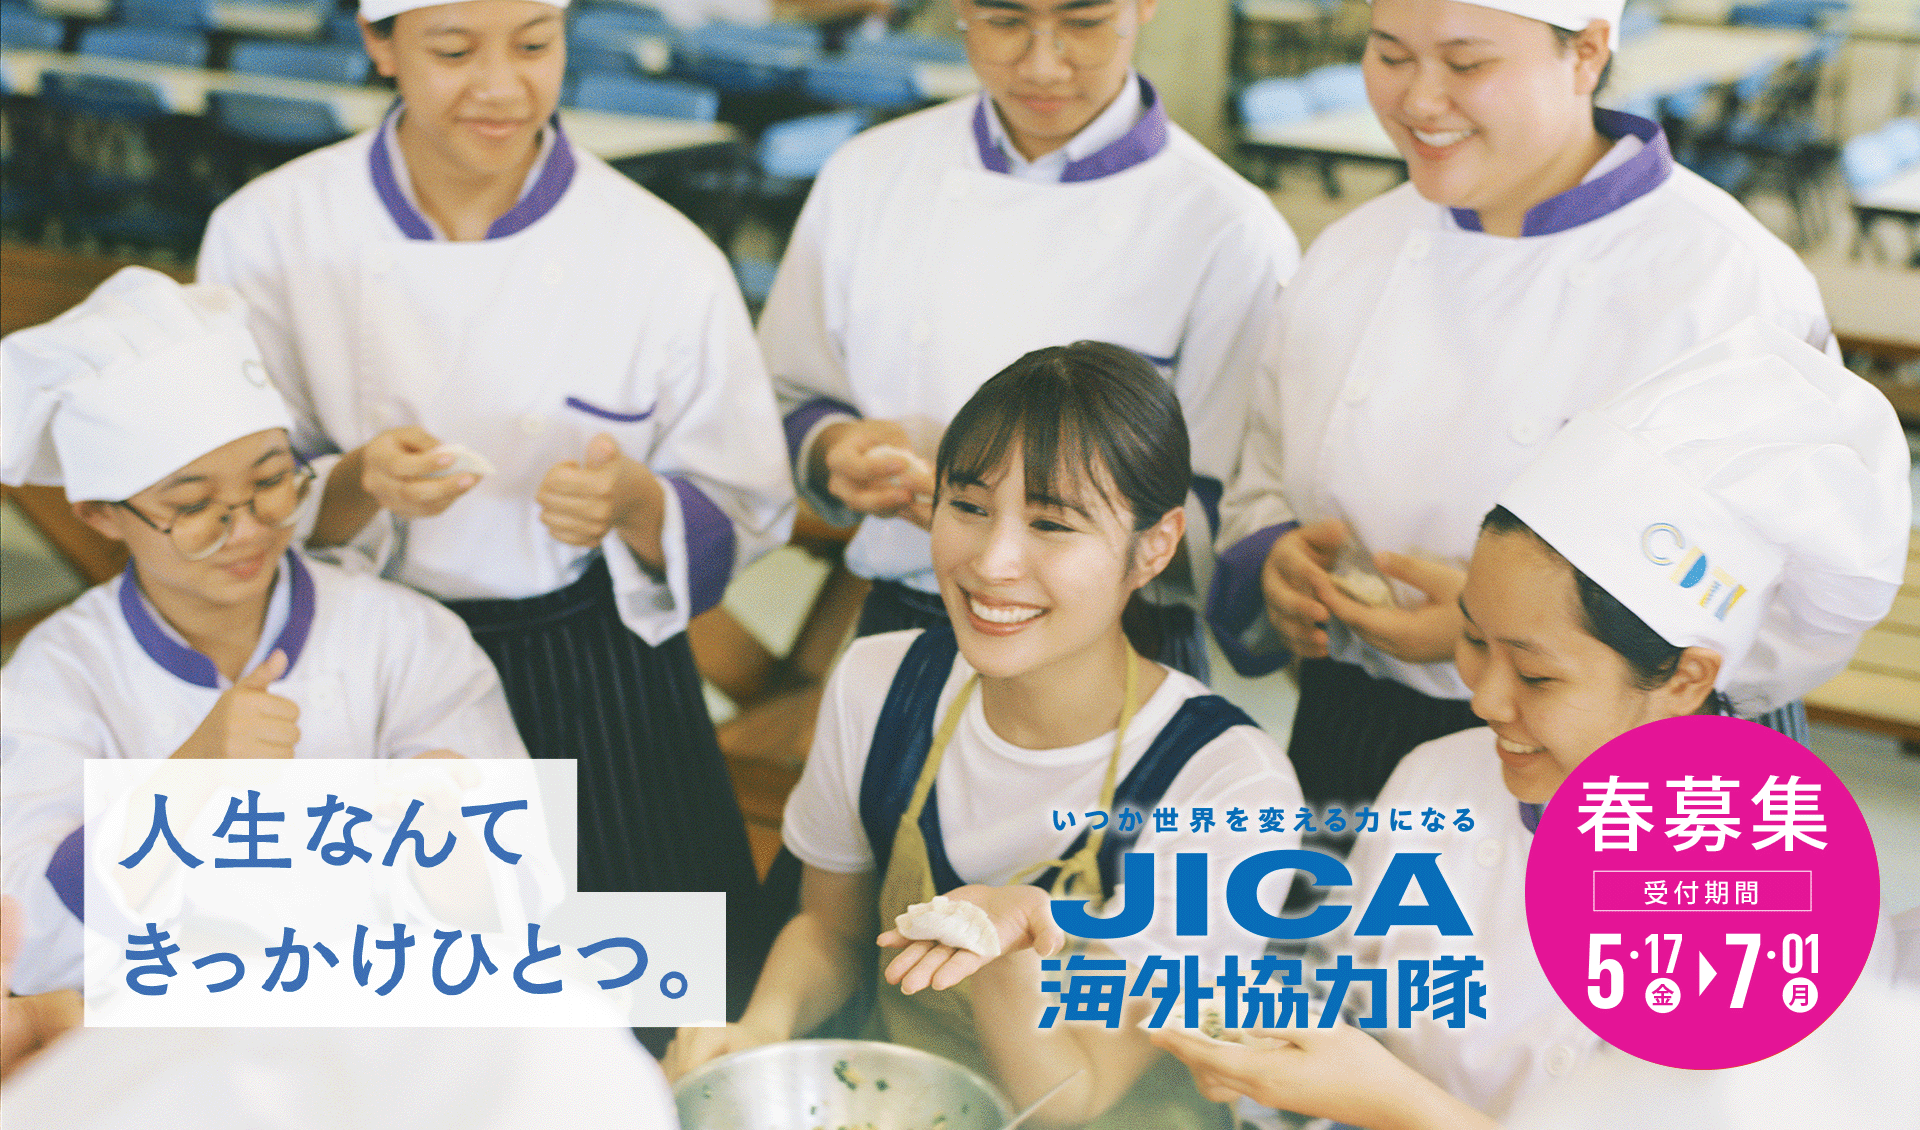 JICA海外協力隊春募集ページはこちら